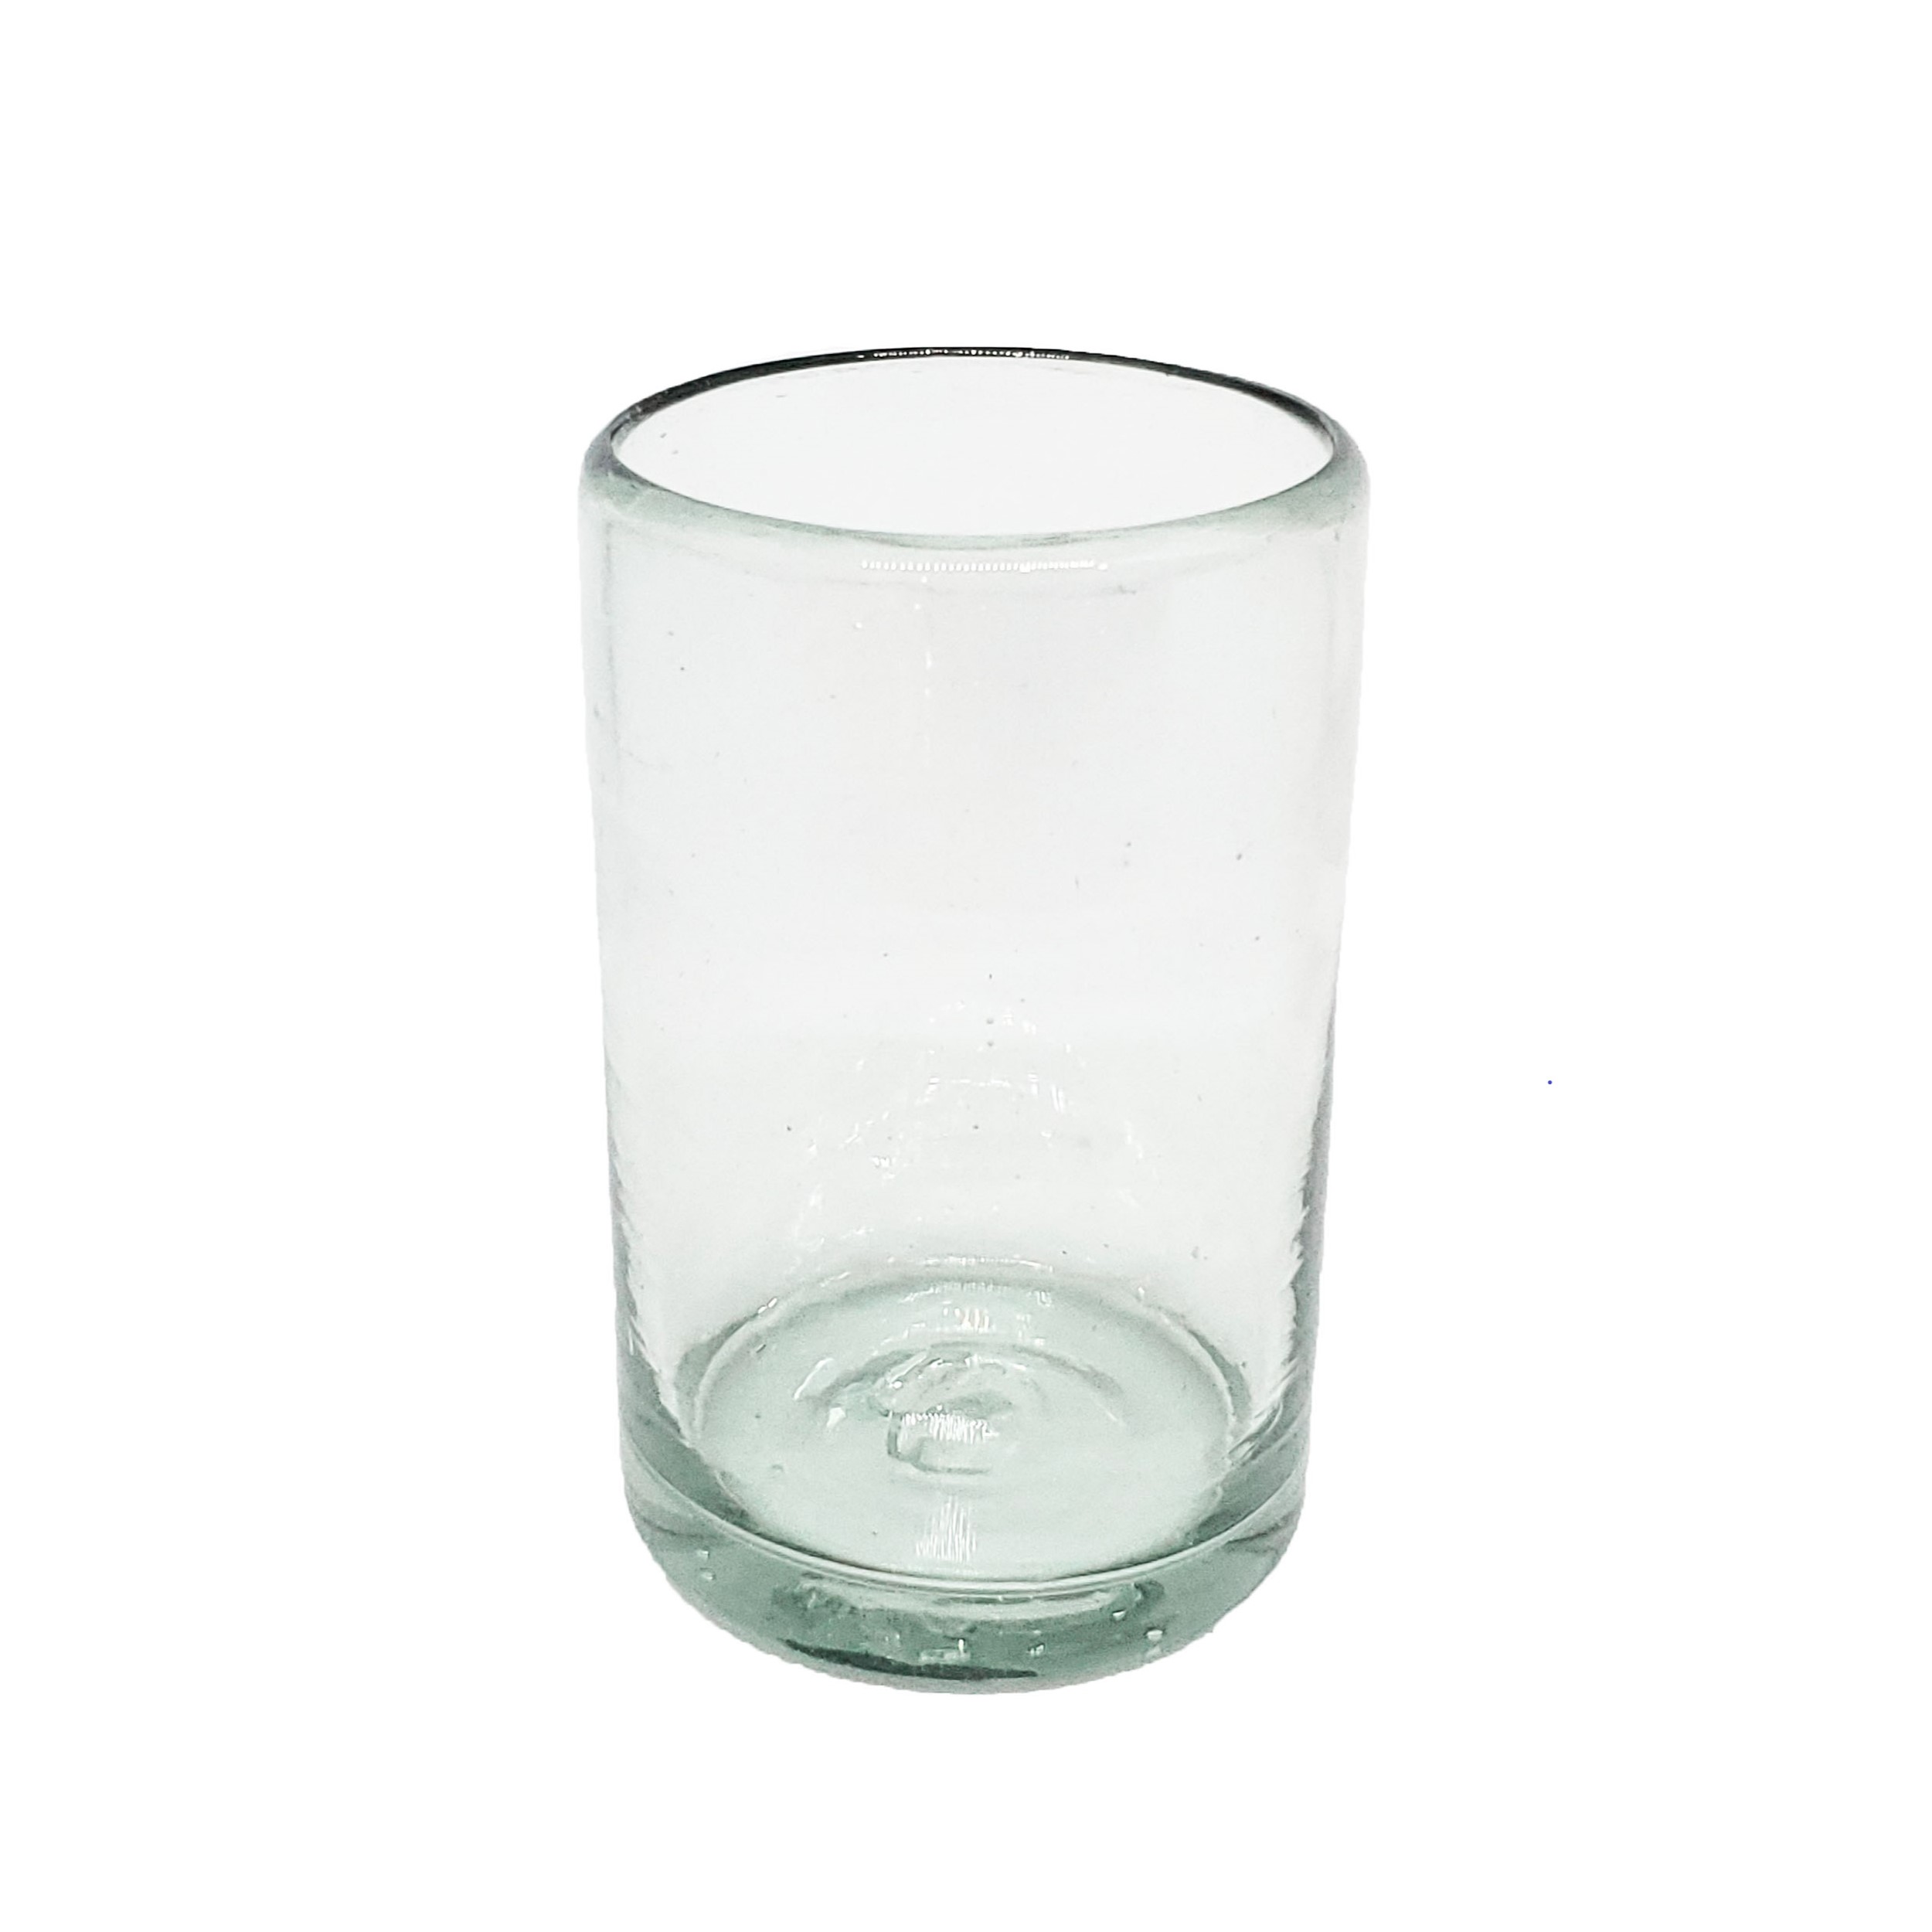 VIDRIO SOPLADO / vasos Jugo 9oz Transparentes, 9 oz, Vidrio Reciclado, Libre de Plomo y Toxinas